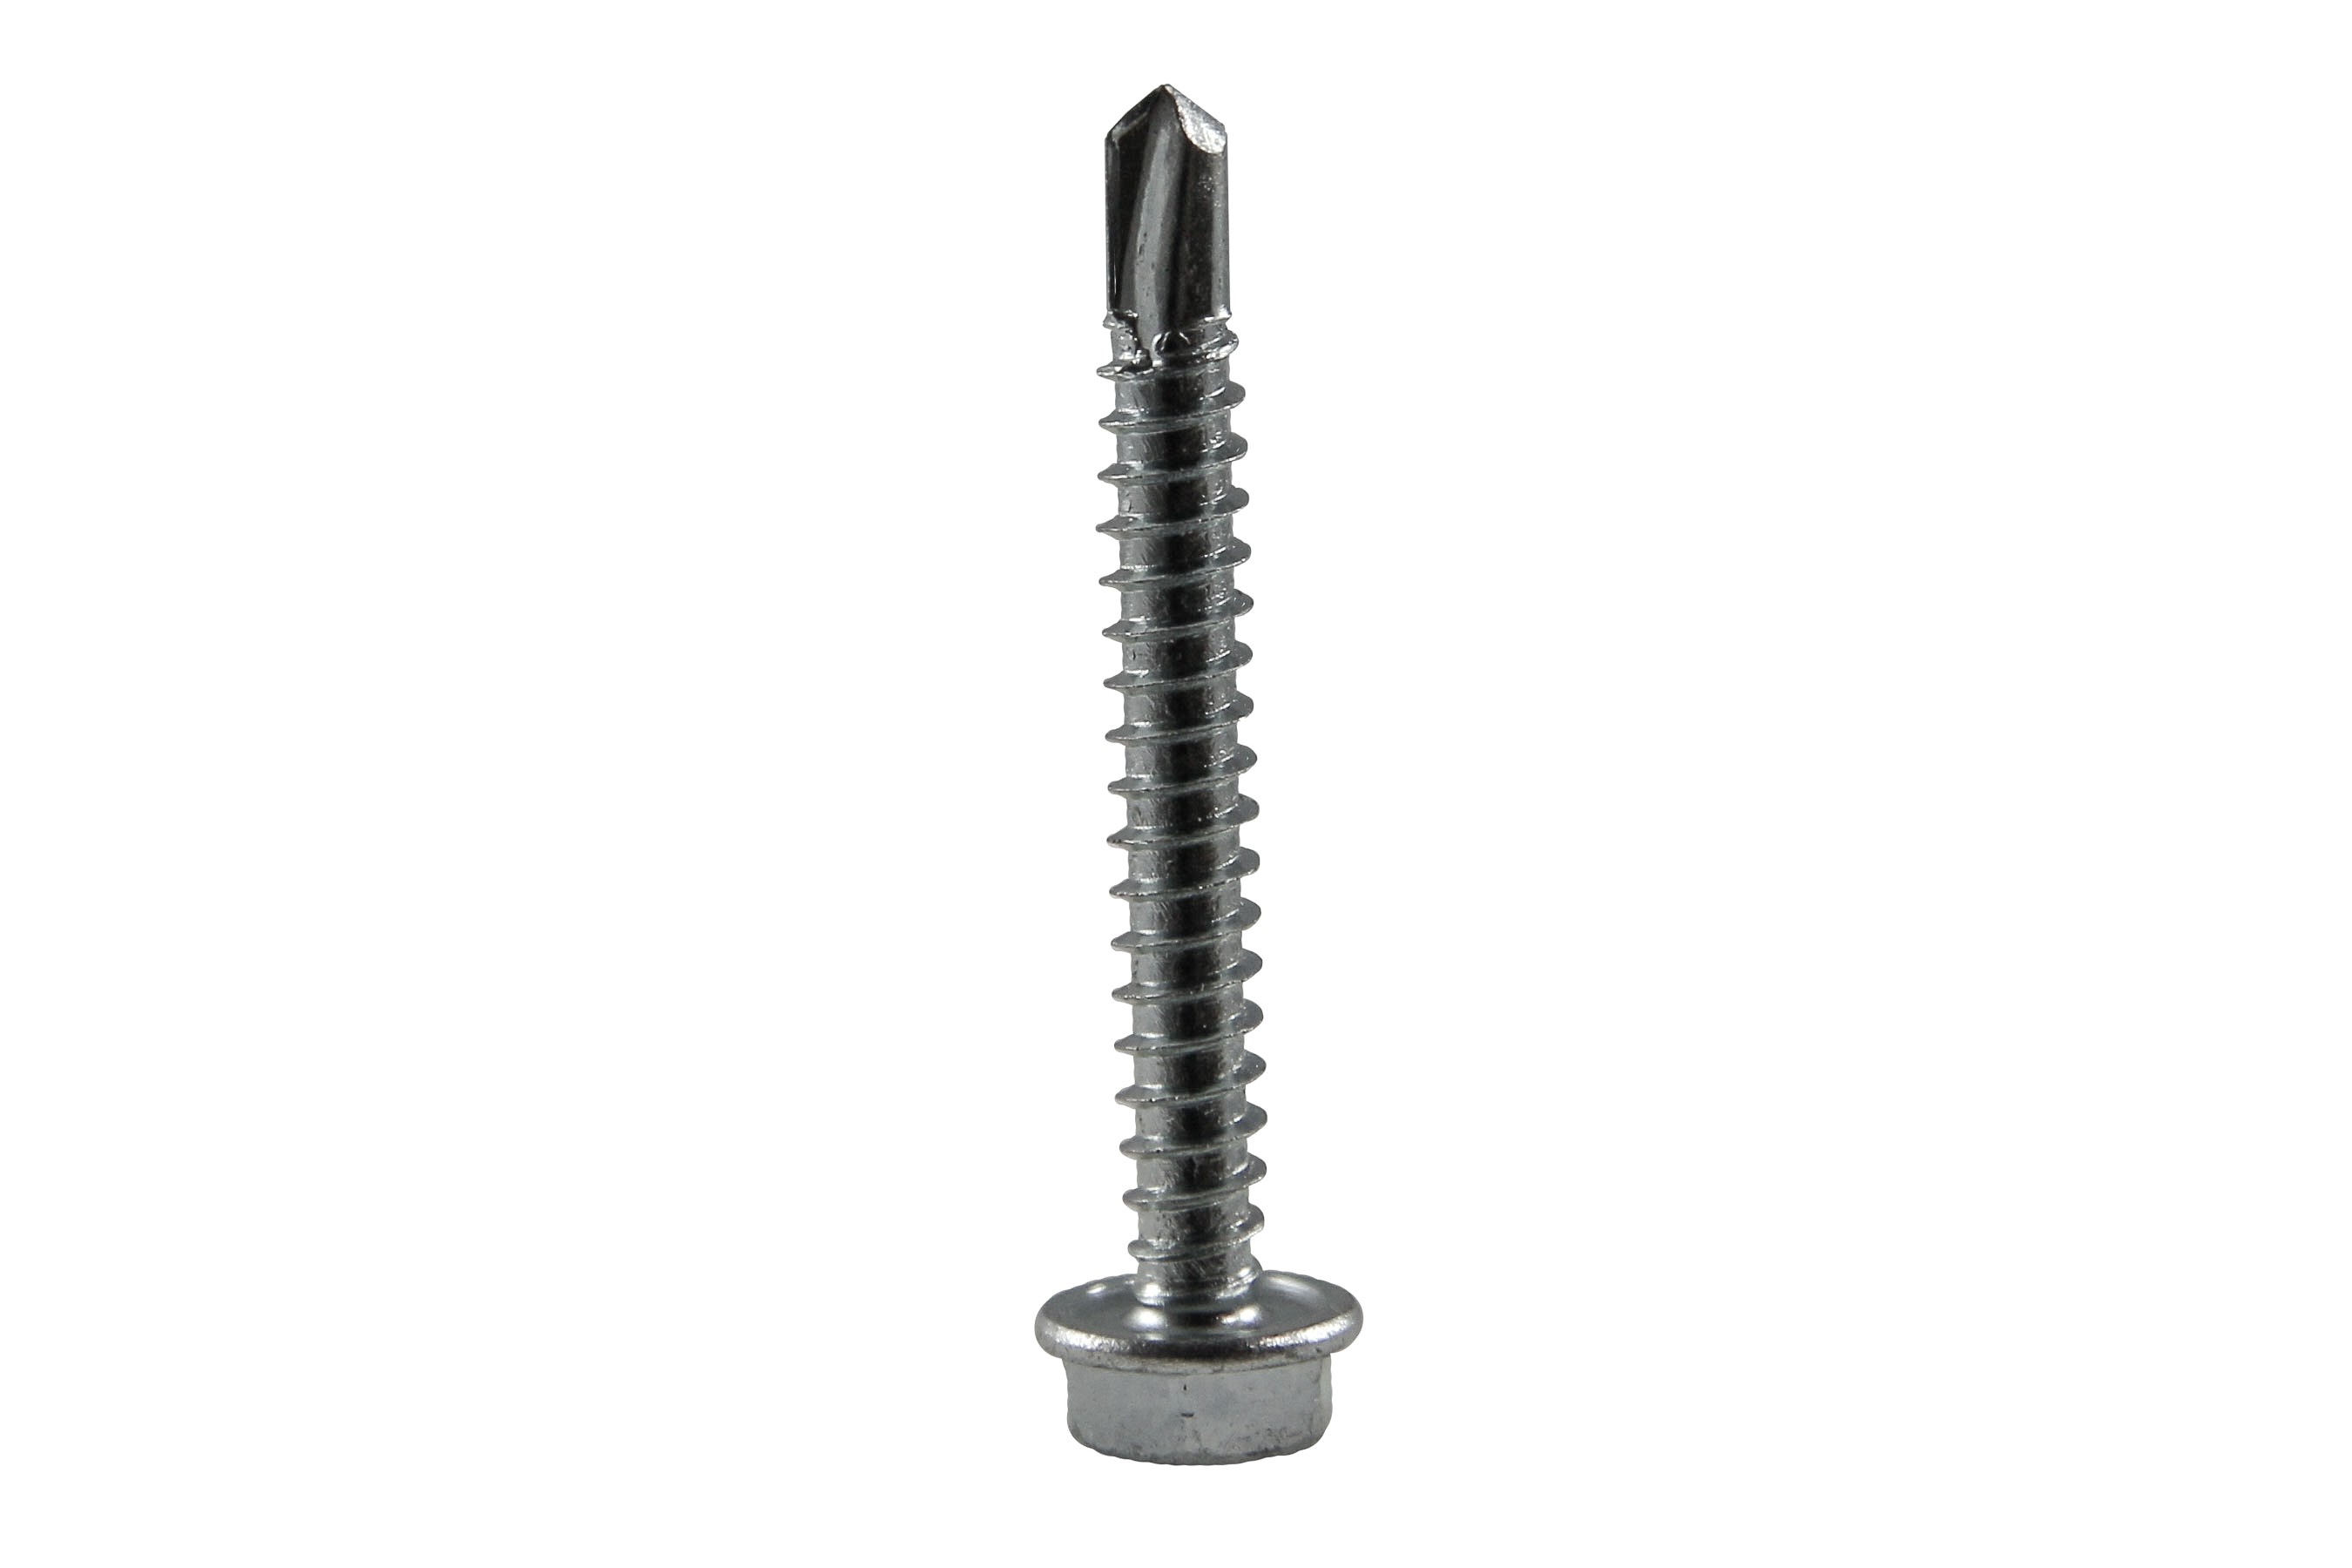 Drilling screw 4,8 x 45 mm